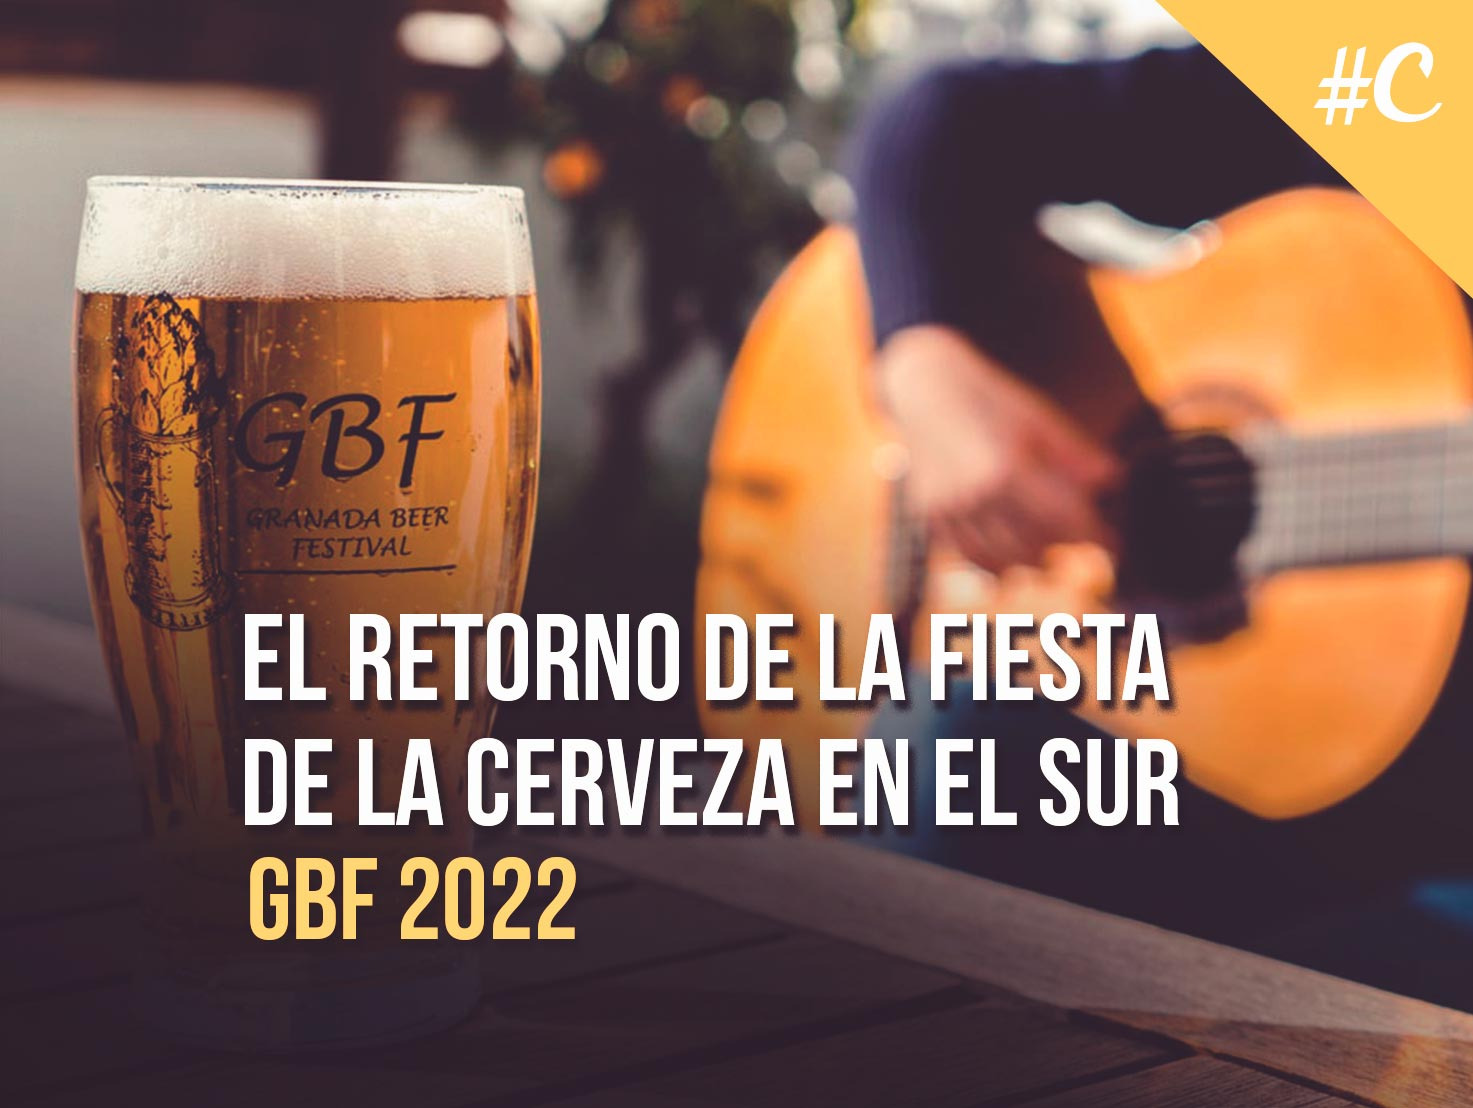 Granada Beer Festival 2022: El retorno de la fiesta de la cerveza en el sur